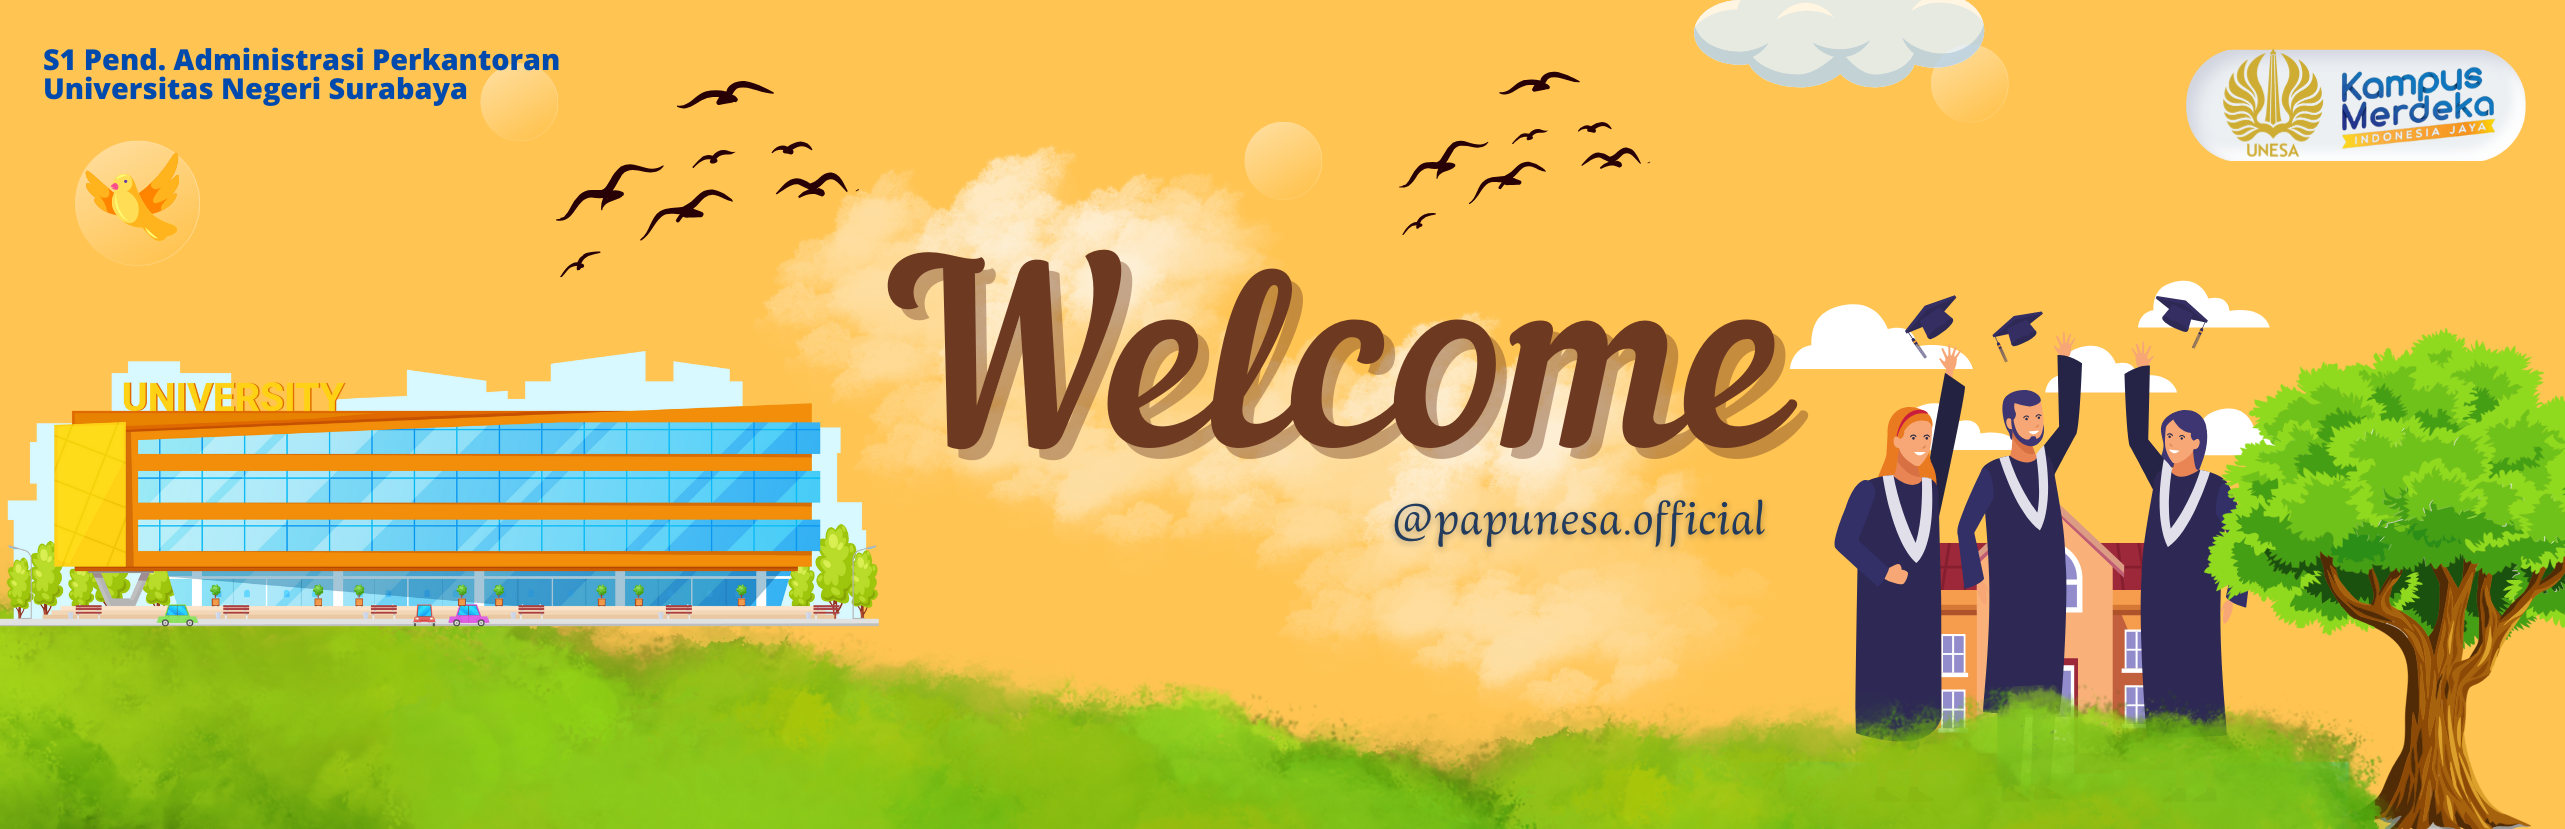 welcome website pap